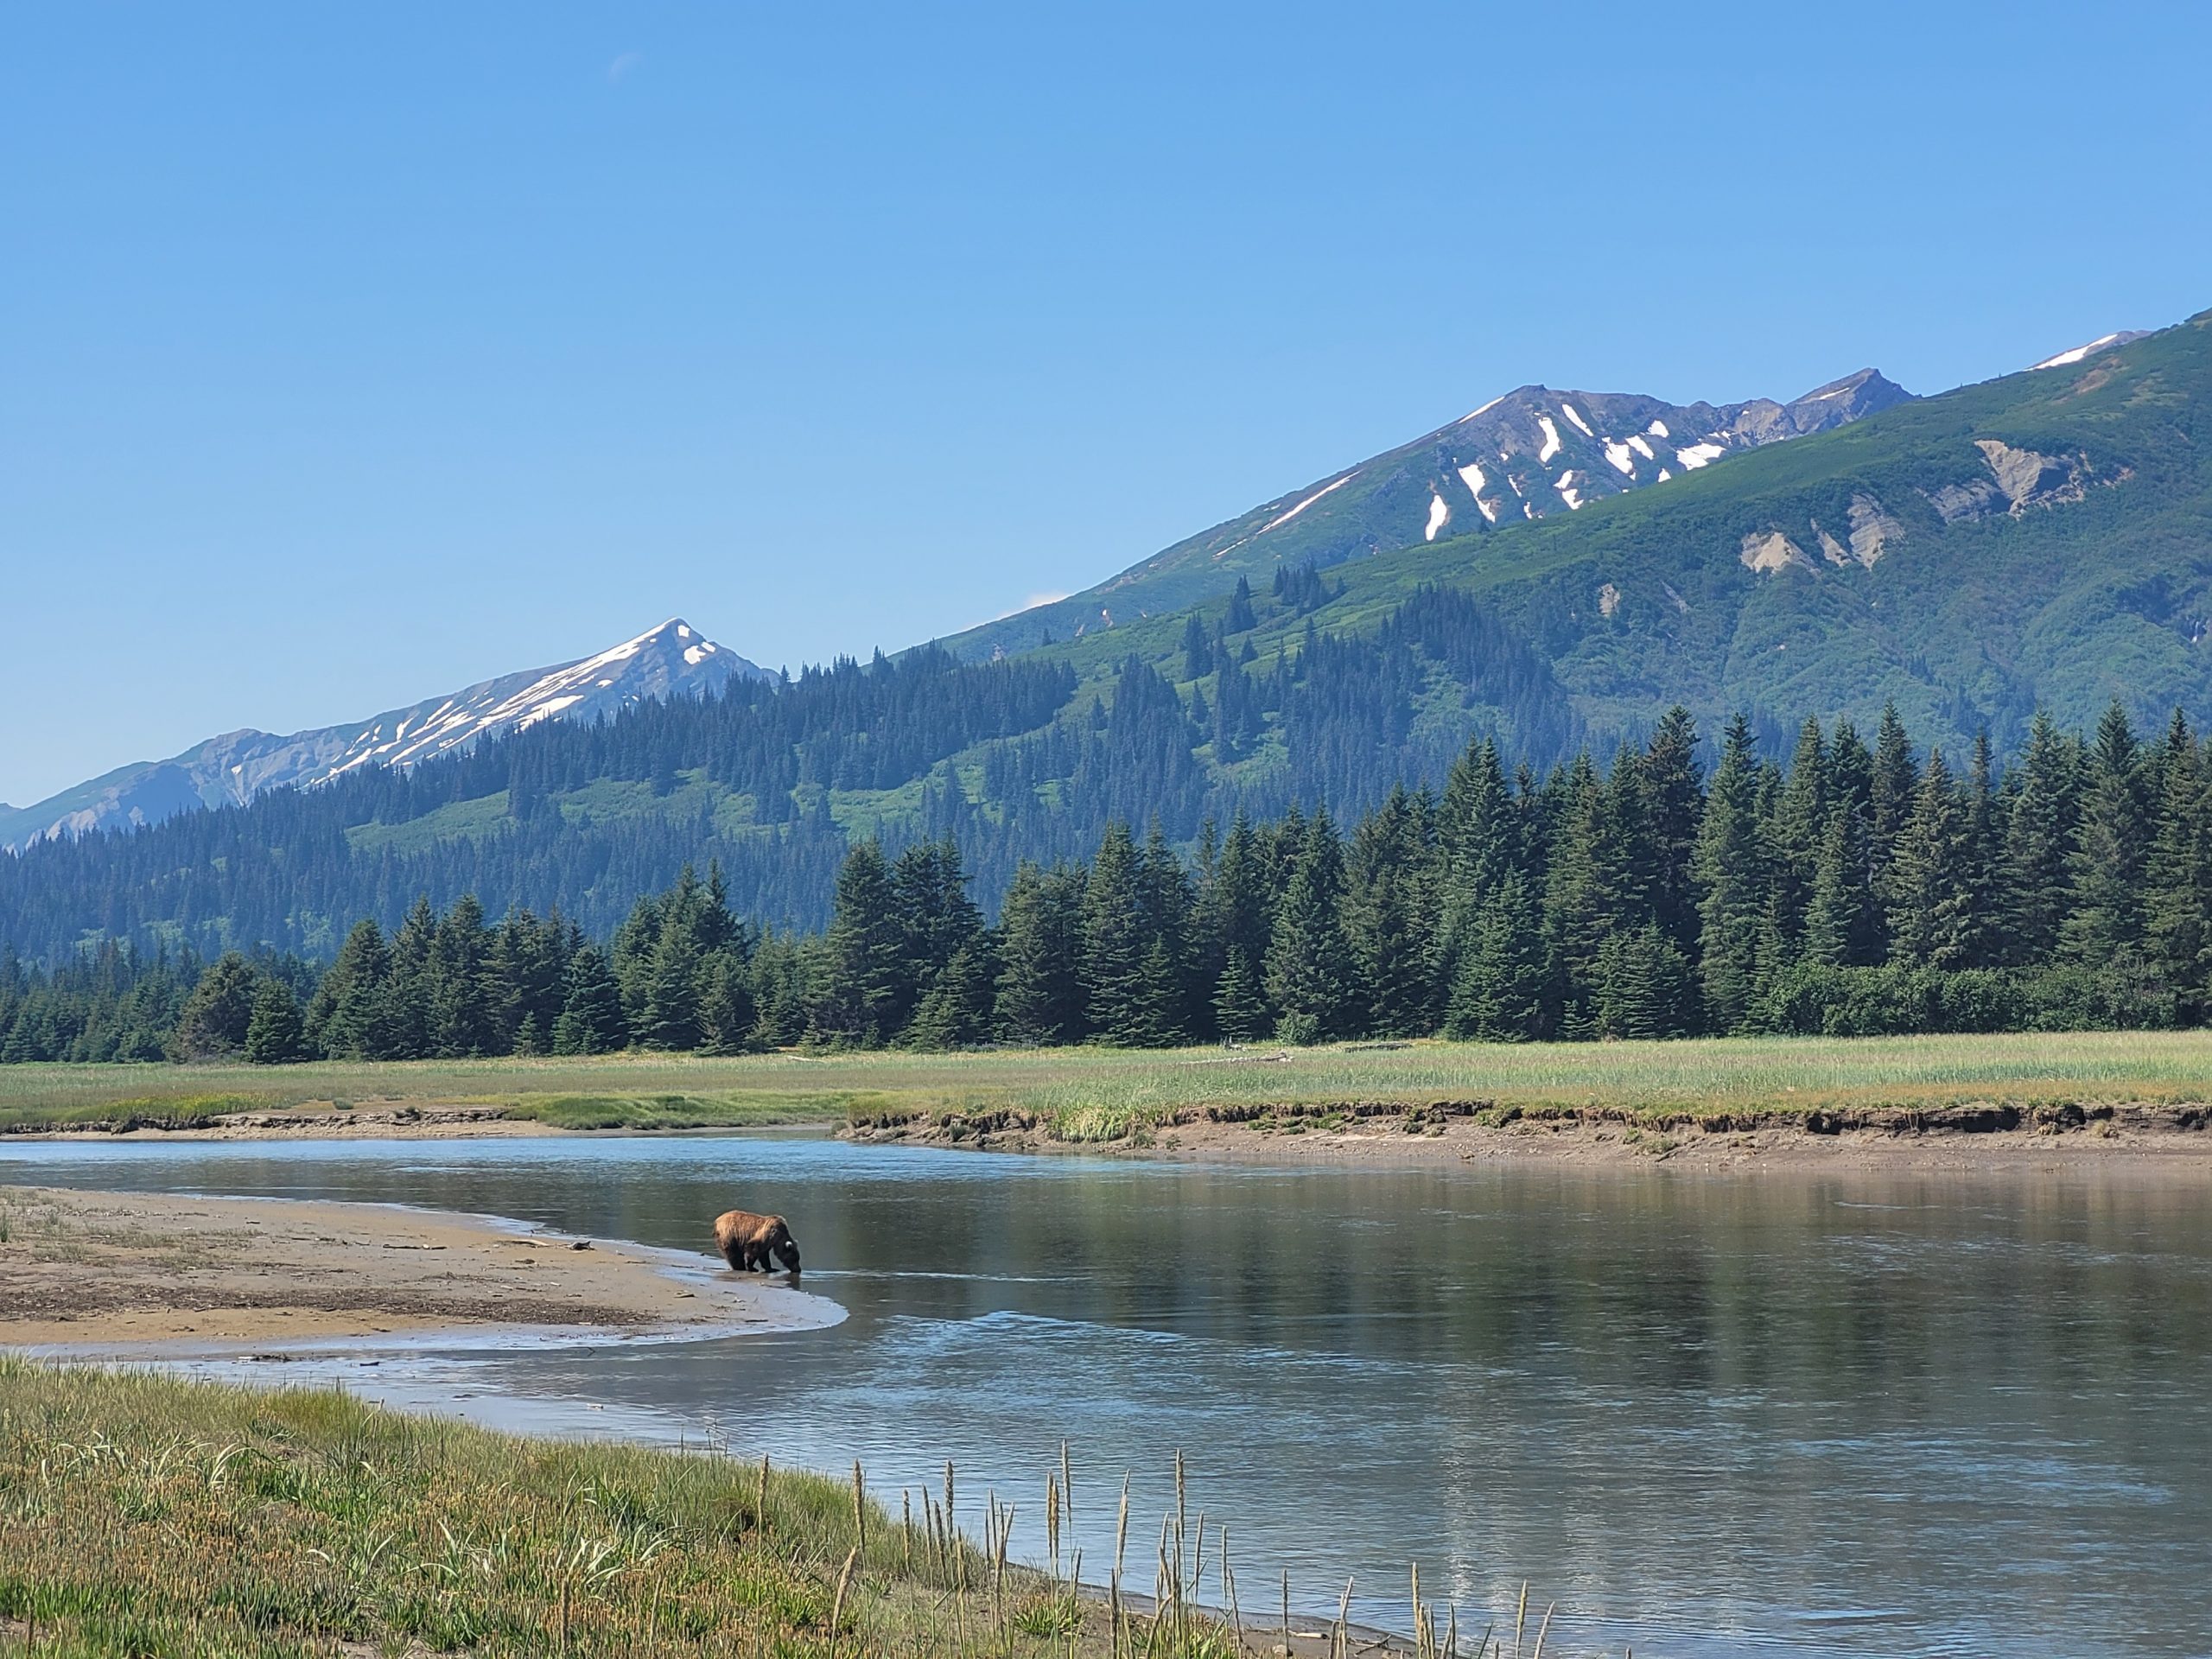 TRIP REPORT: Alaskan Bear Viewing Experience 6/22/22